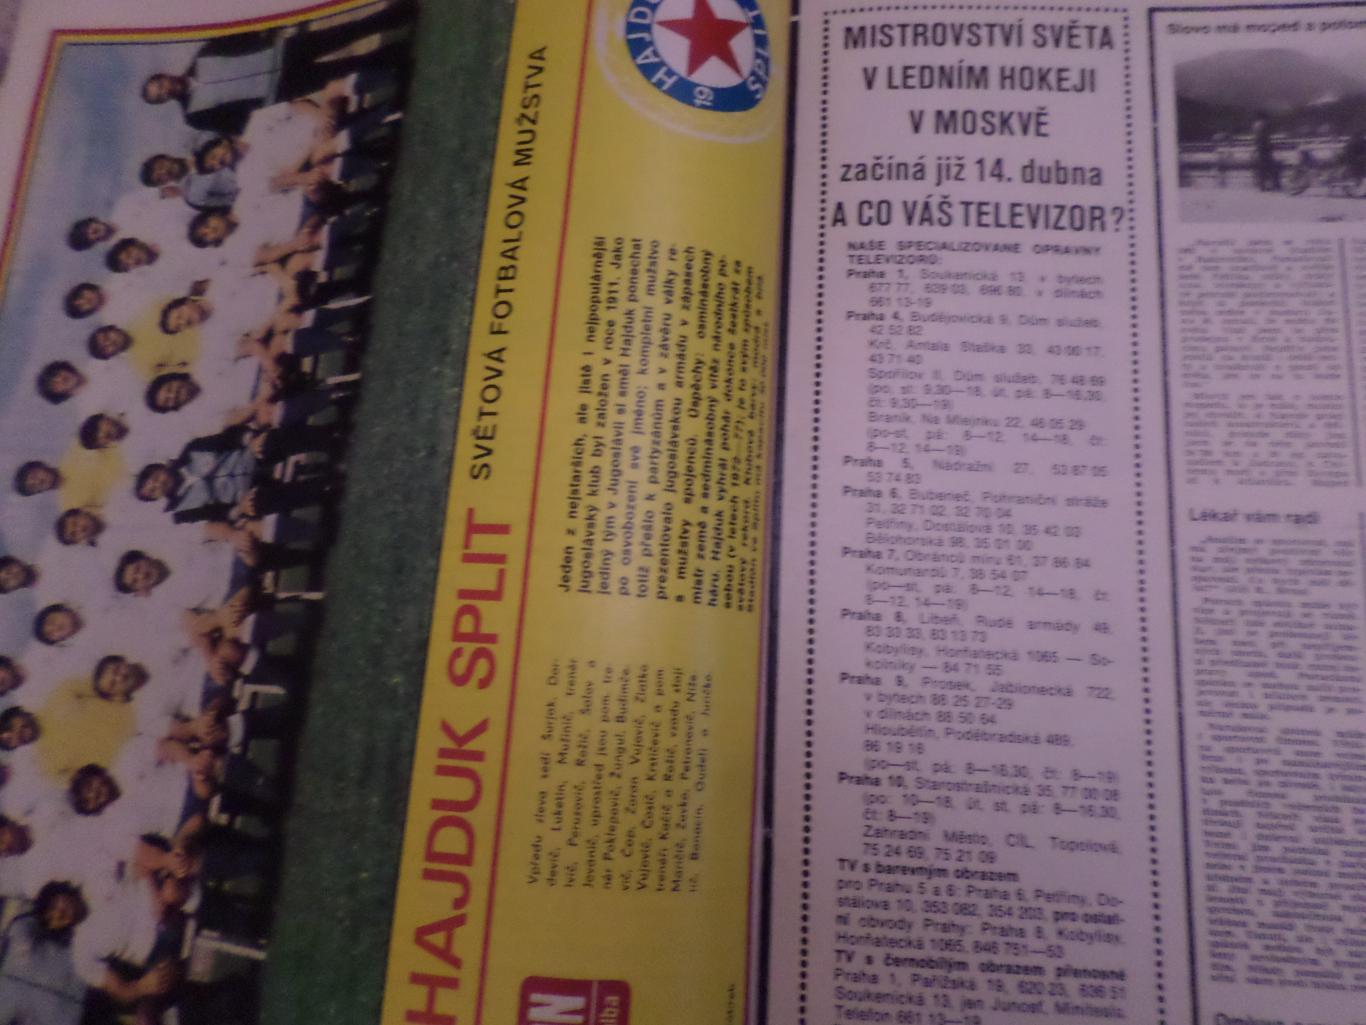 журнал Стадион Чехословакия № 14 1979 г постер Хайдук 1